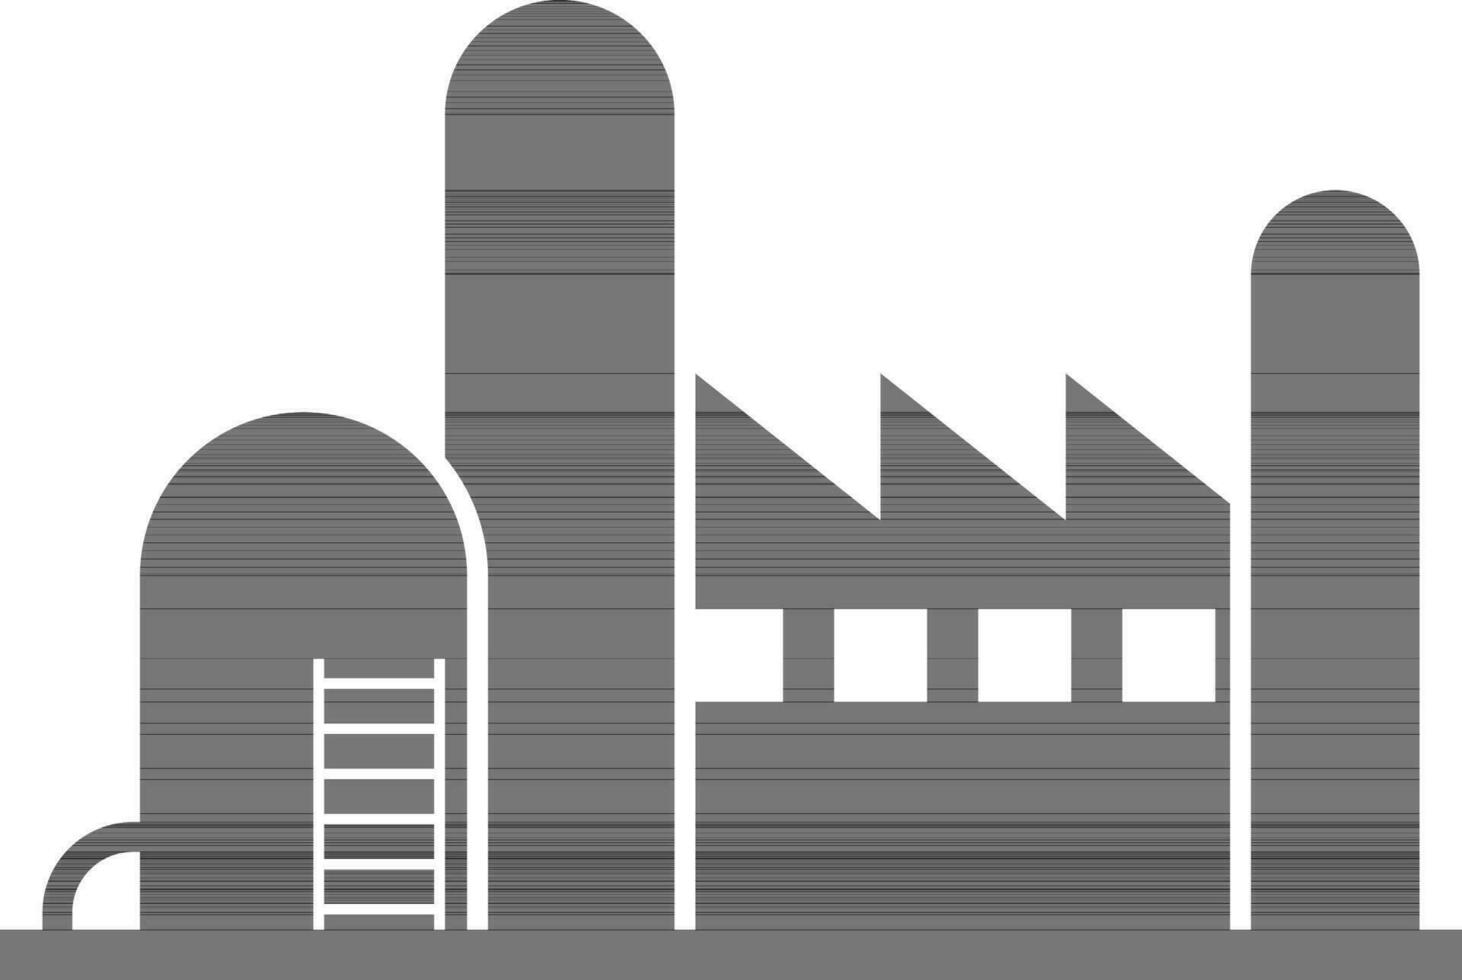 zwart en wit vlak stijl illustratie van een fabriek. vector